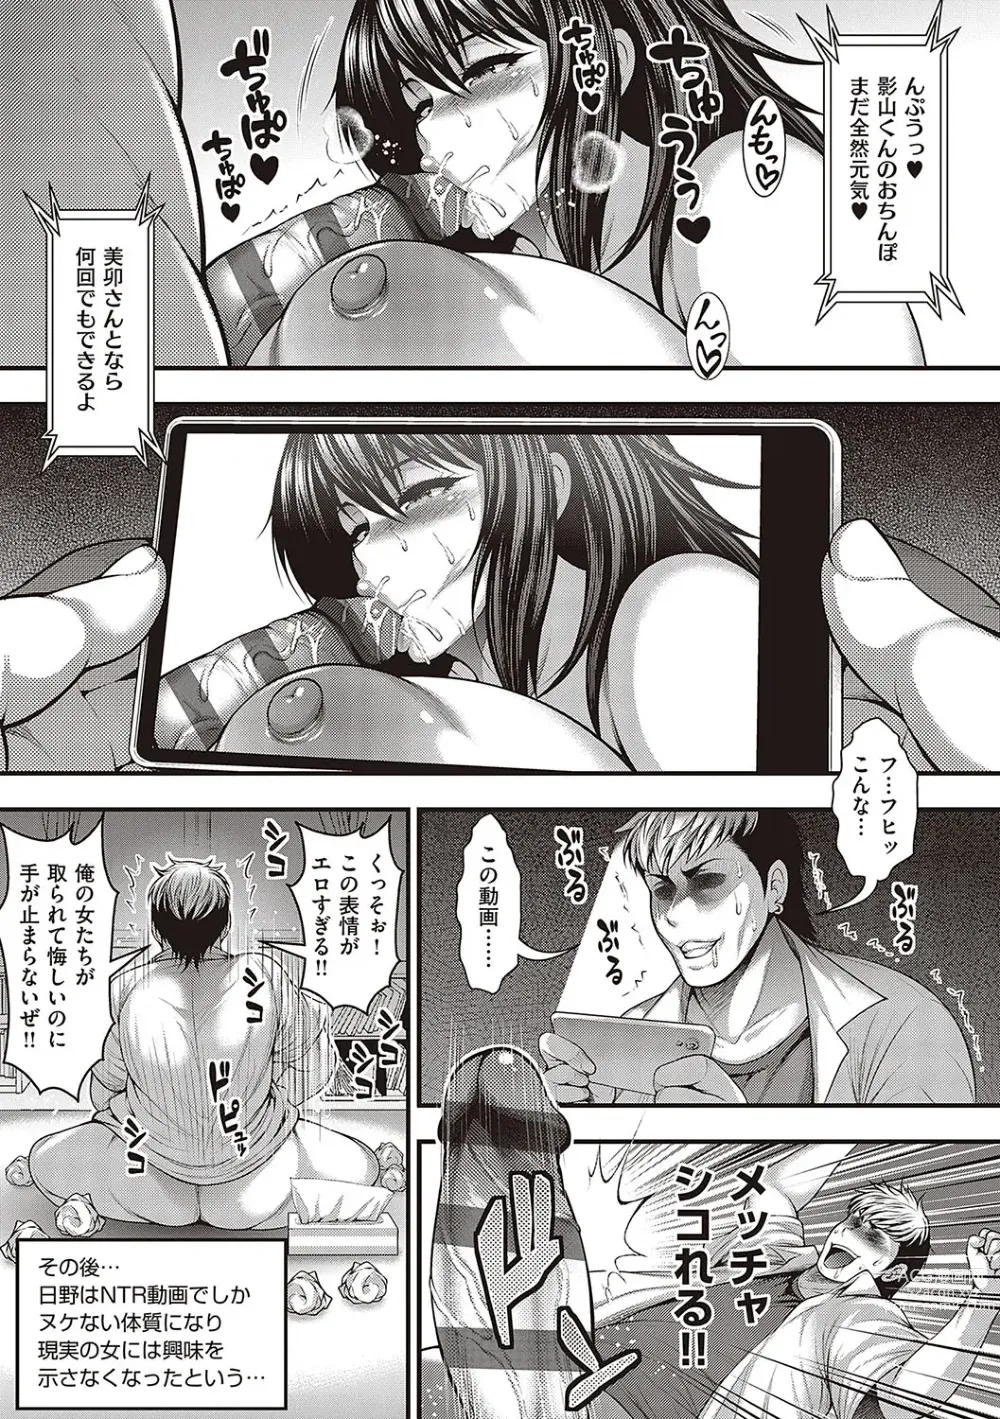 Page 256 of manga Arigatou, Kami Chichi.